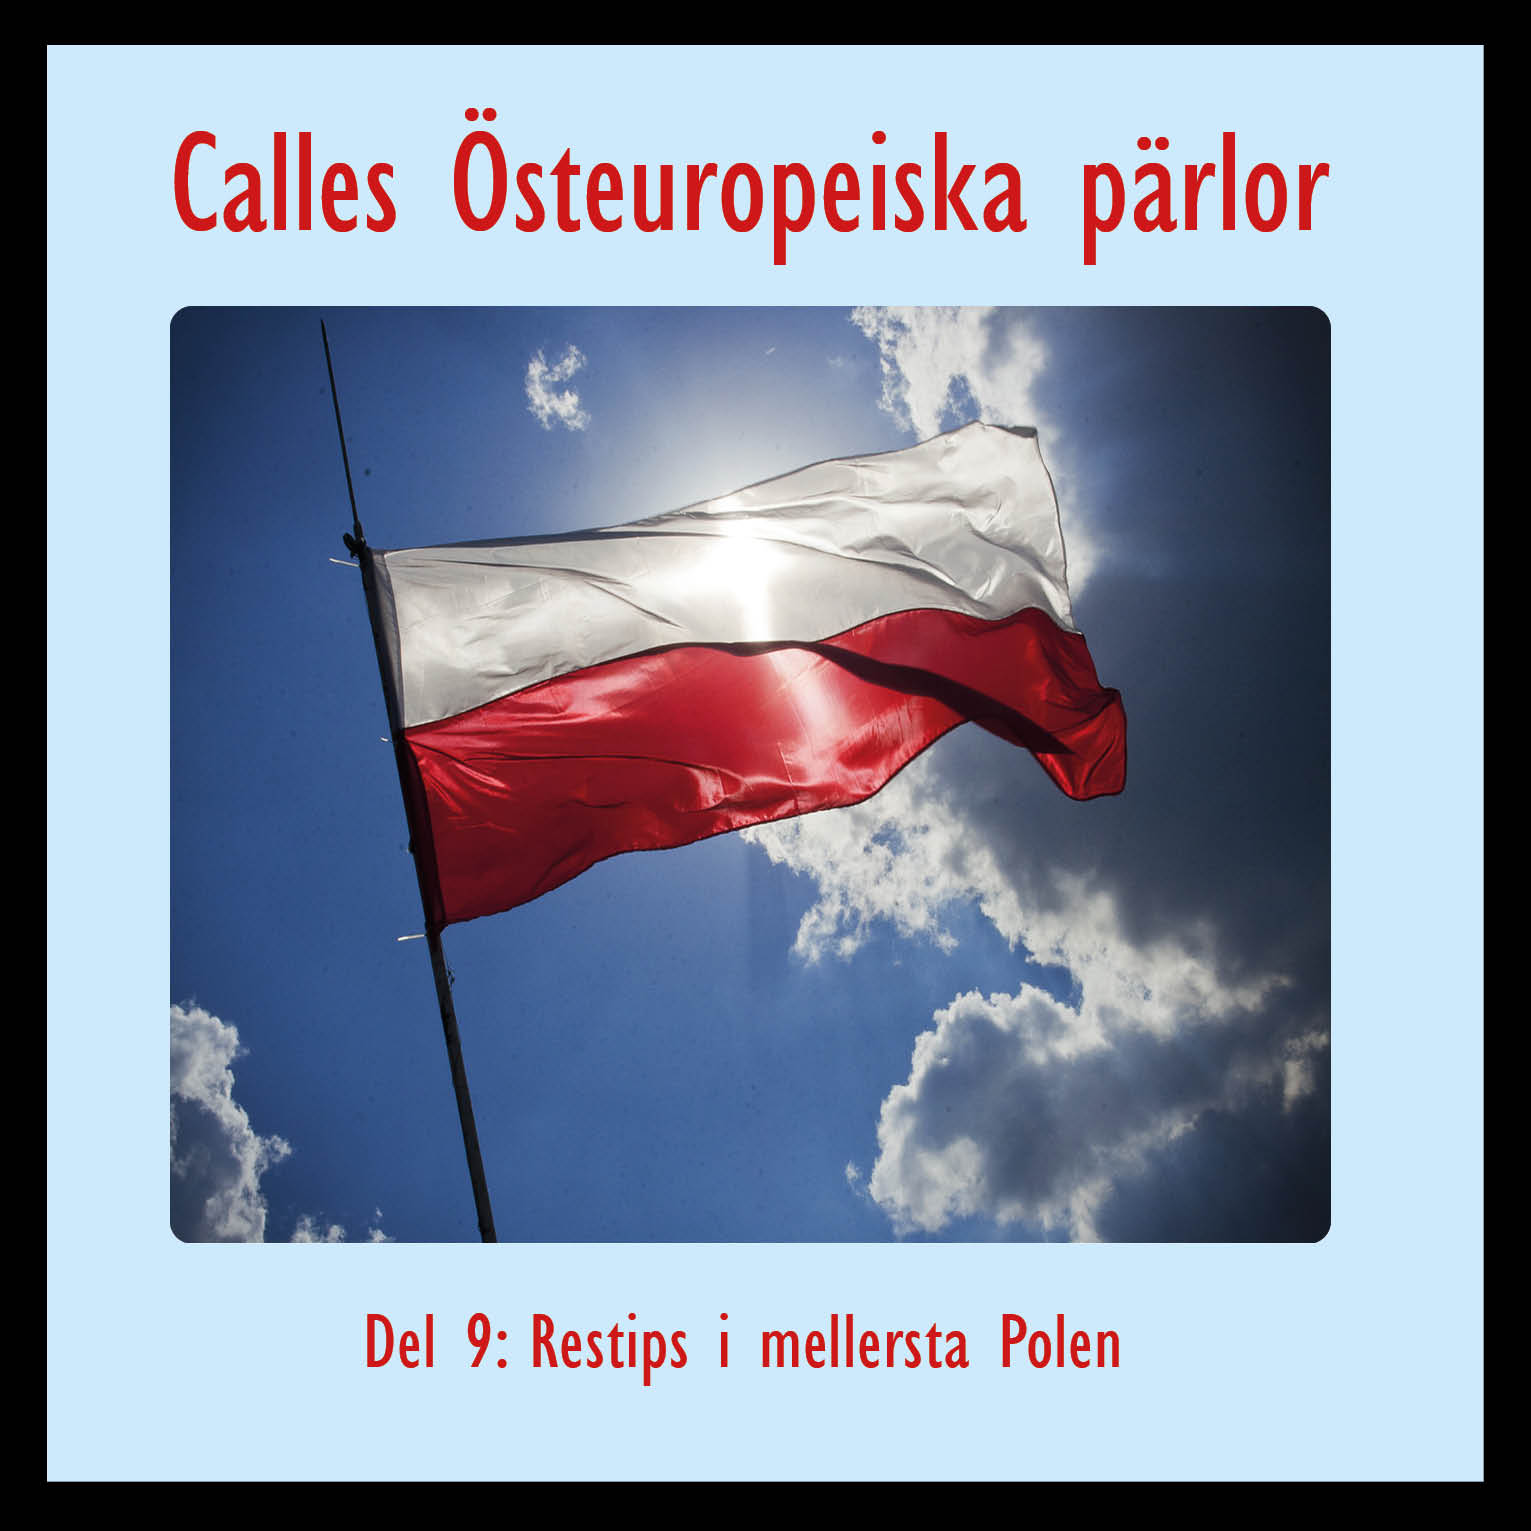 Calles Östeuropeiska pärlor – del 9: Restips mellersta Polen